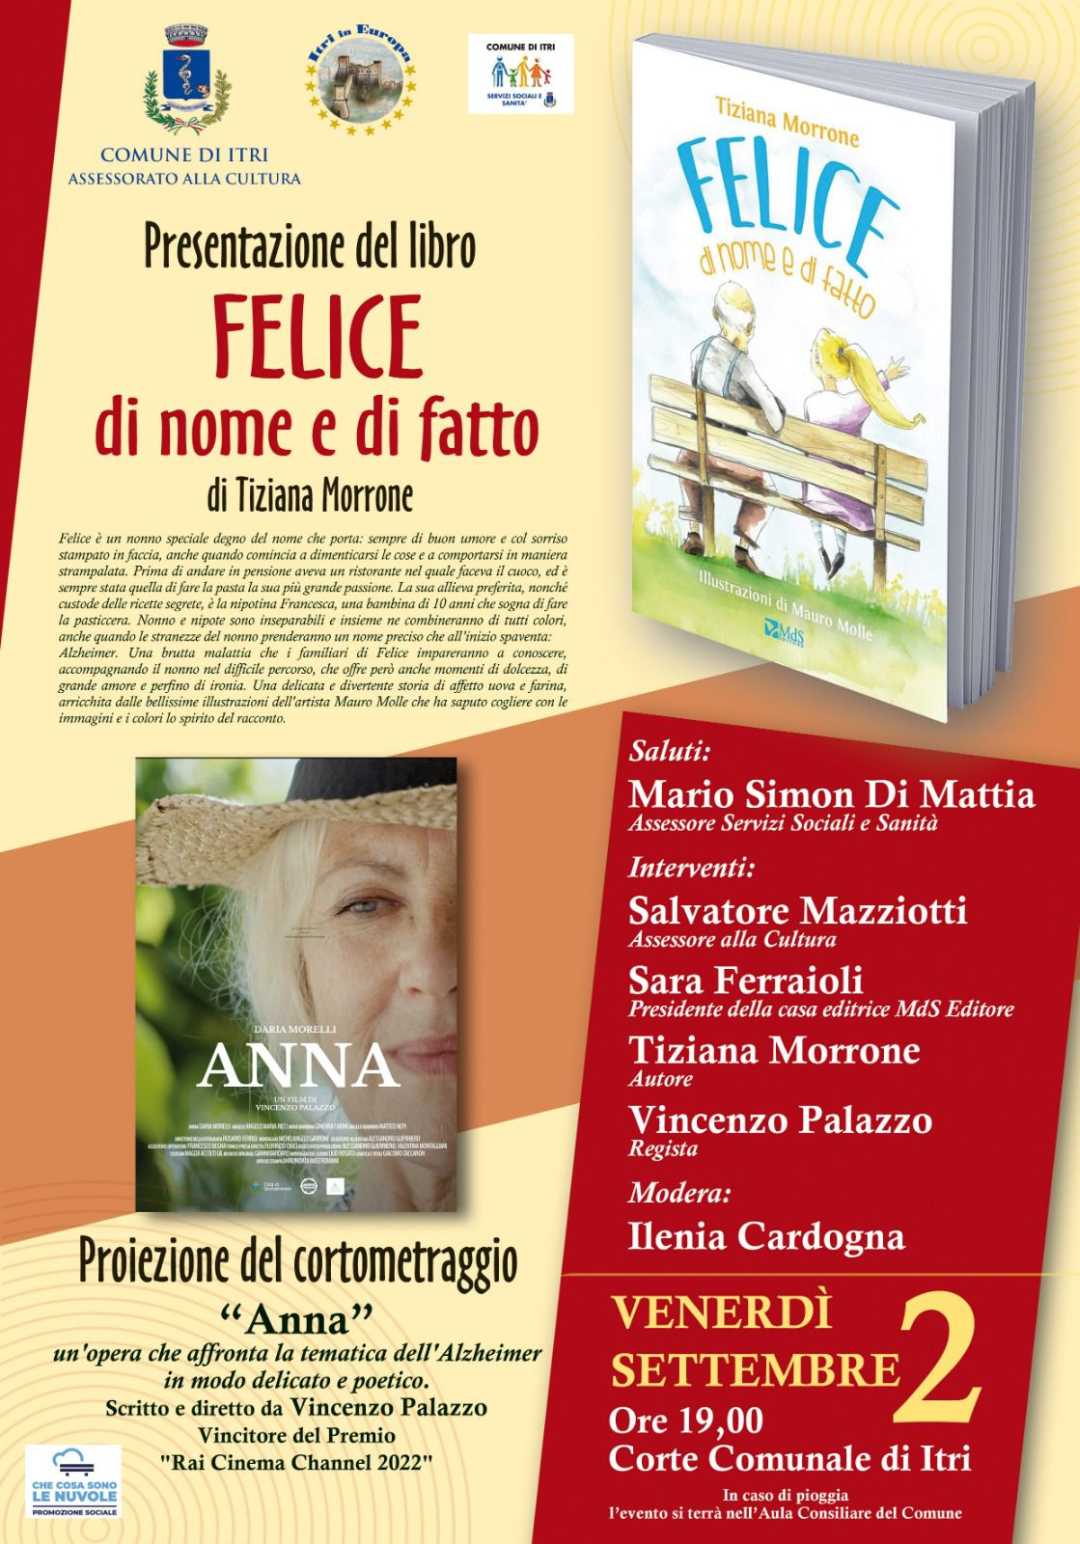 Il corto Anna in tournée italiana: continua il successo dell’opera sociale ambientata a Grottammare